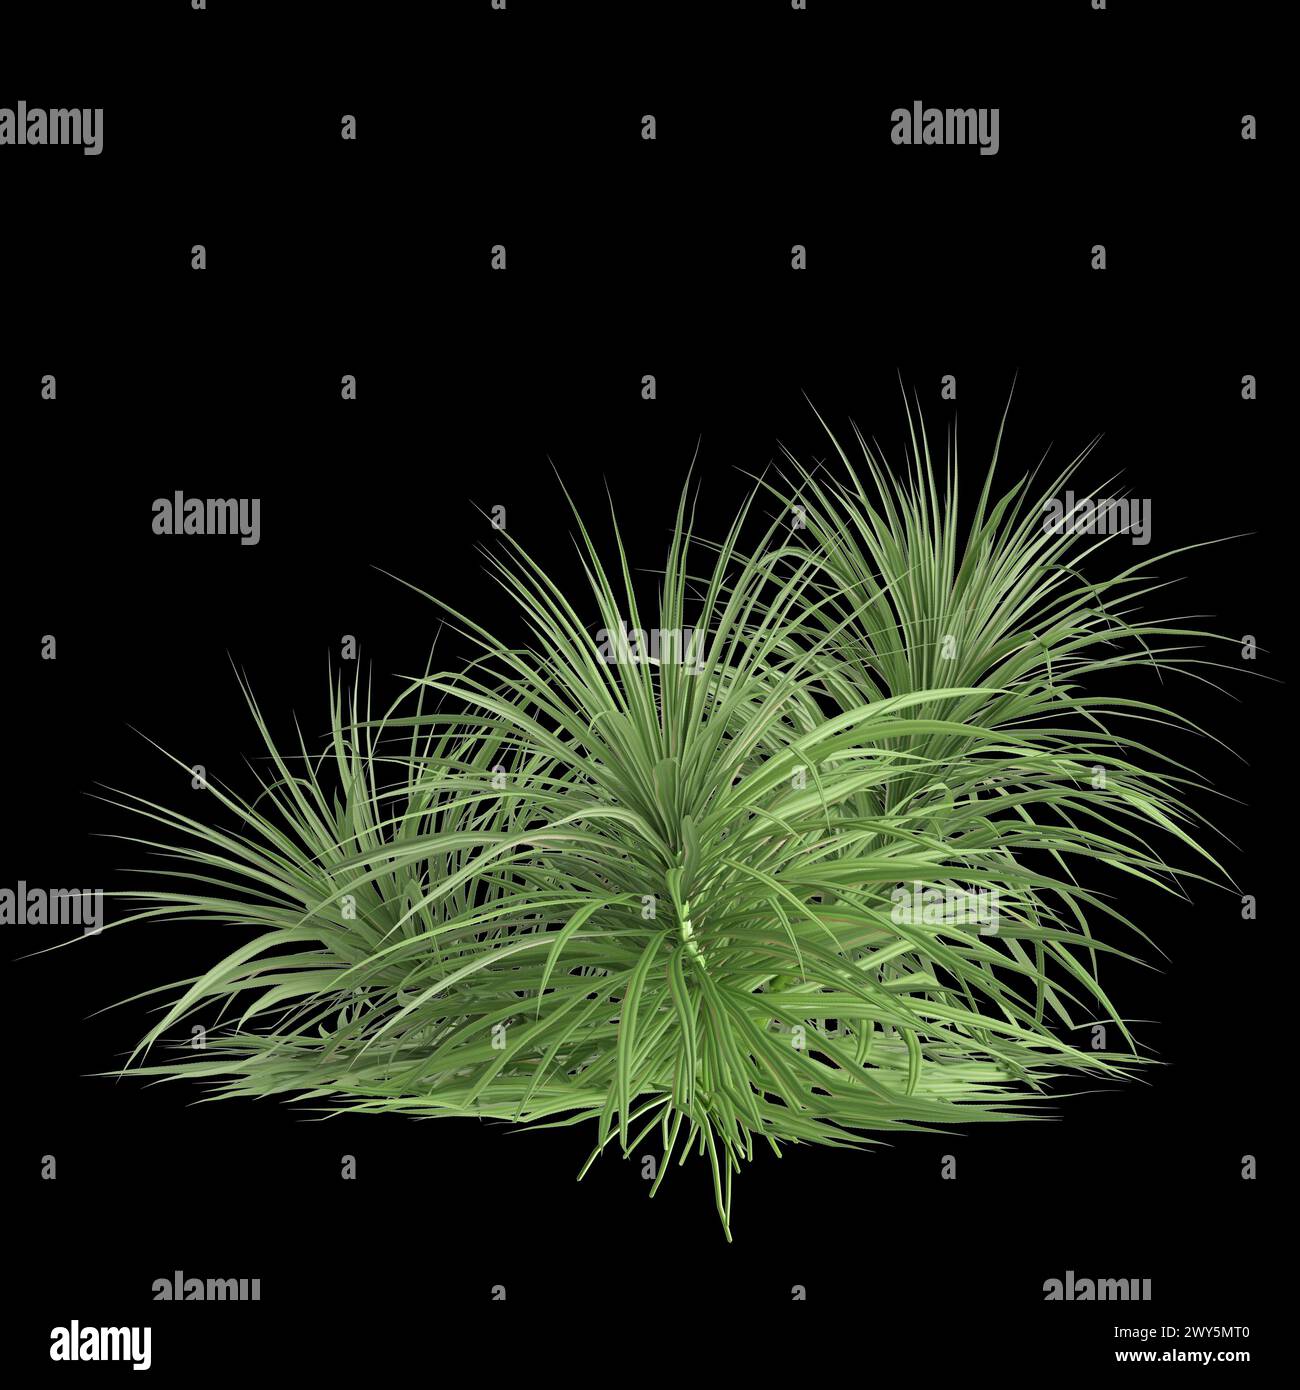 3d illustration of Pandanus amaryllifolius tree isolated on black background Stock Photo